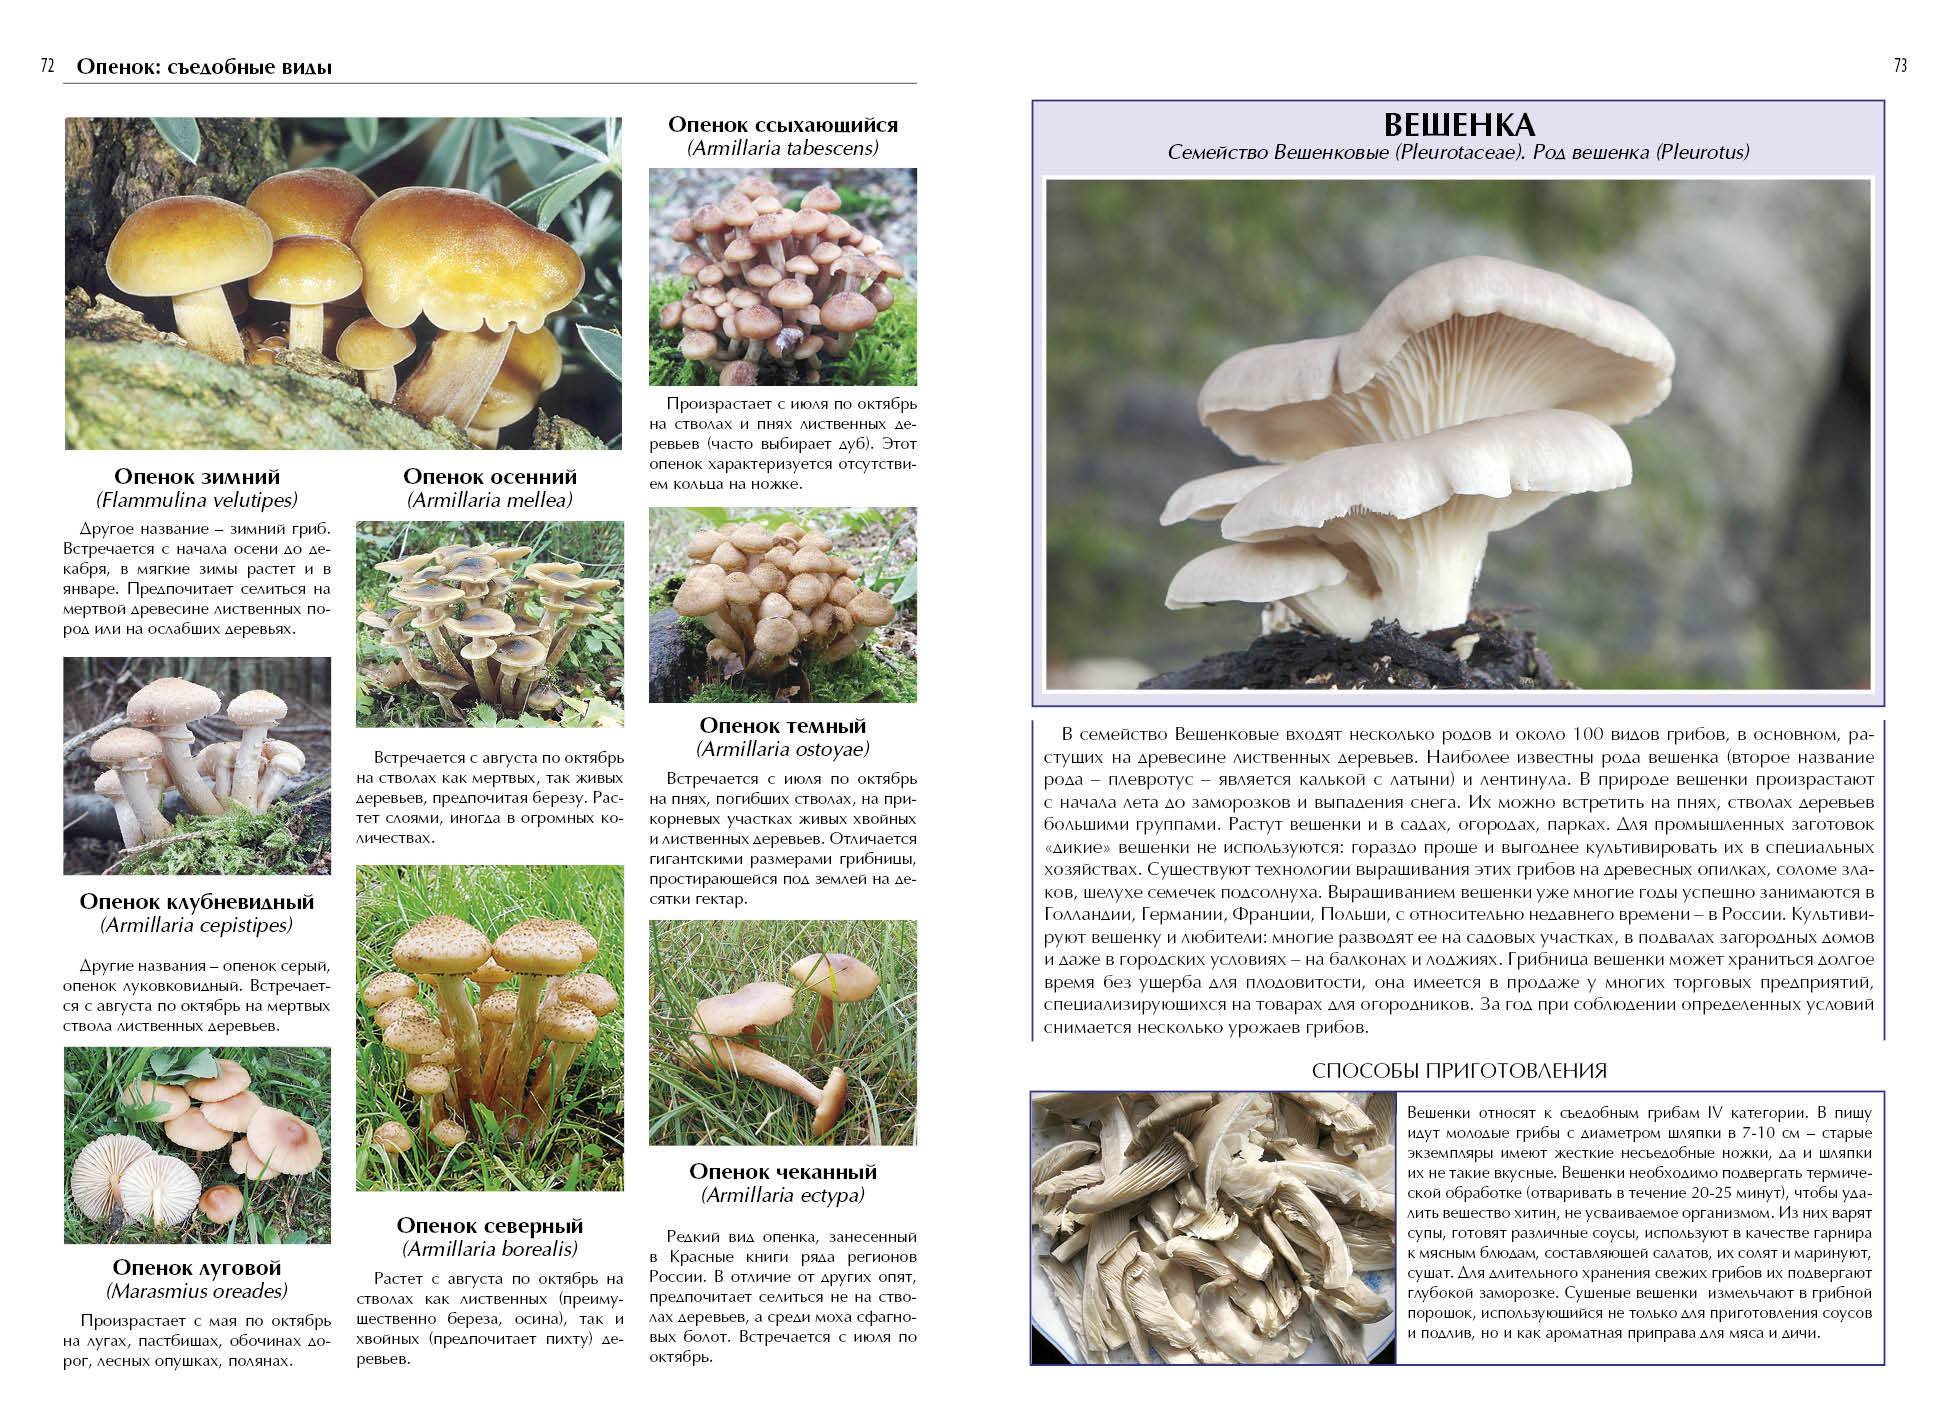 Краснокнижные грибы россии: какие грибы можно собирать и какие нельзя